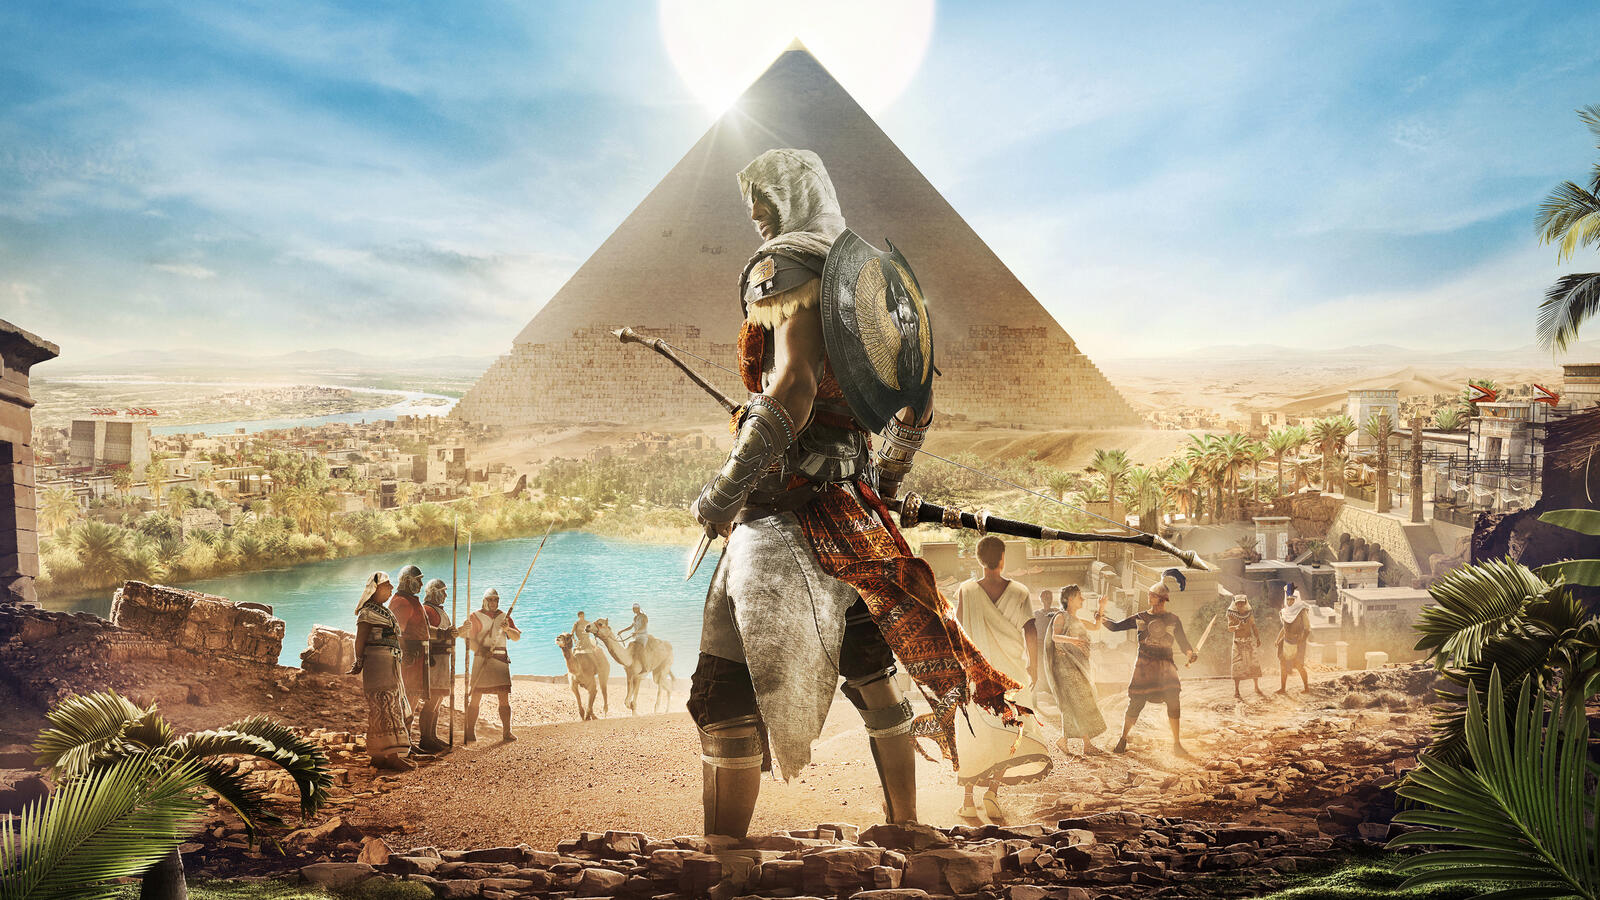 Бесплатное фото Assassins creed origins на фоне египетской пирамиды